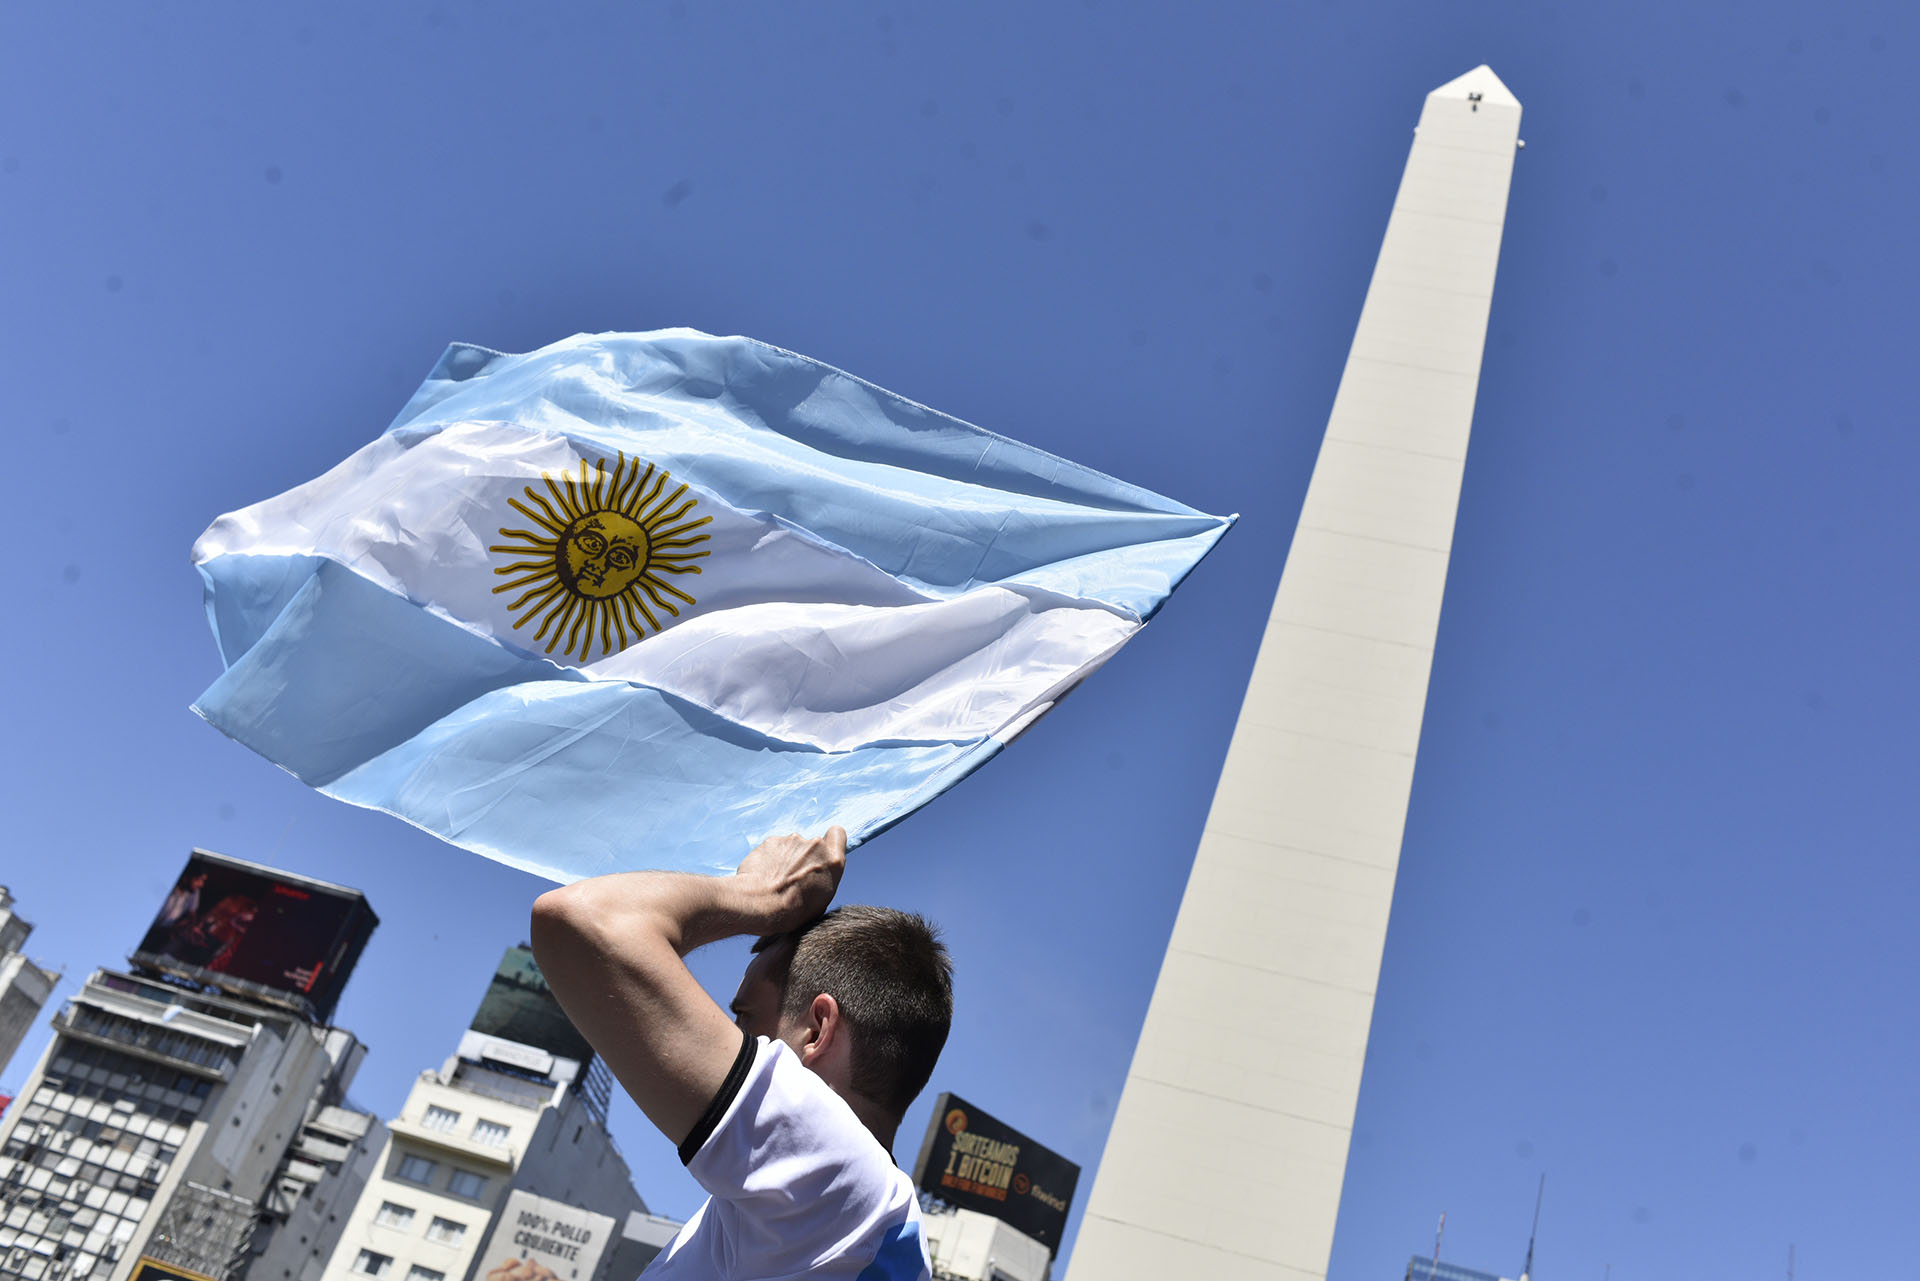 La bandera y el Obelisco, dos símbolos de la argentinidad (Crédito: Adrian Escandar)